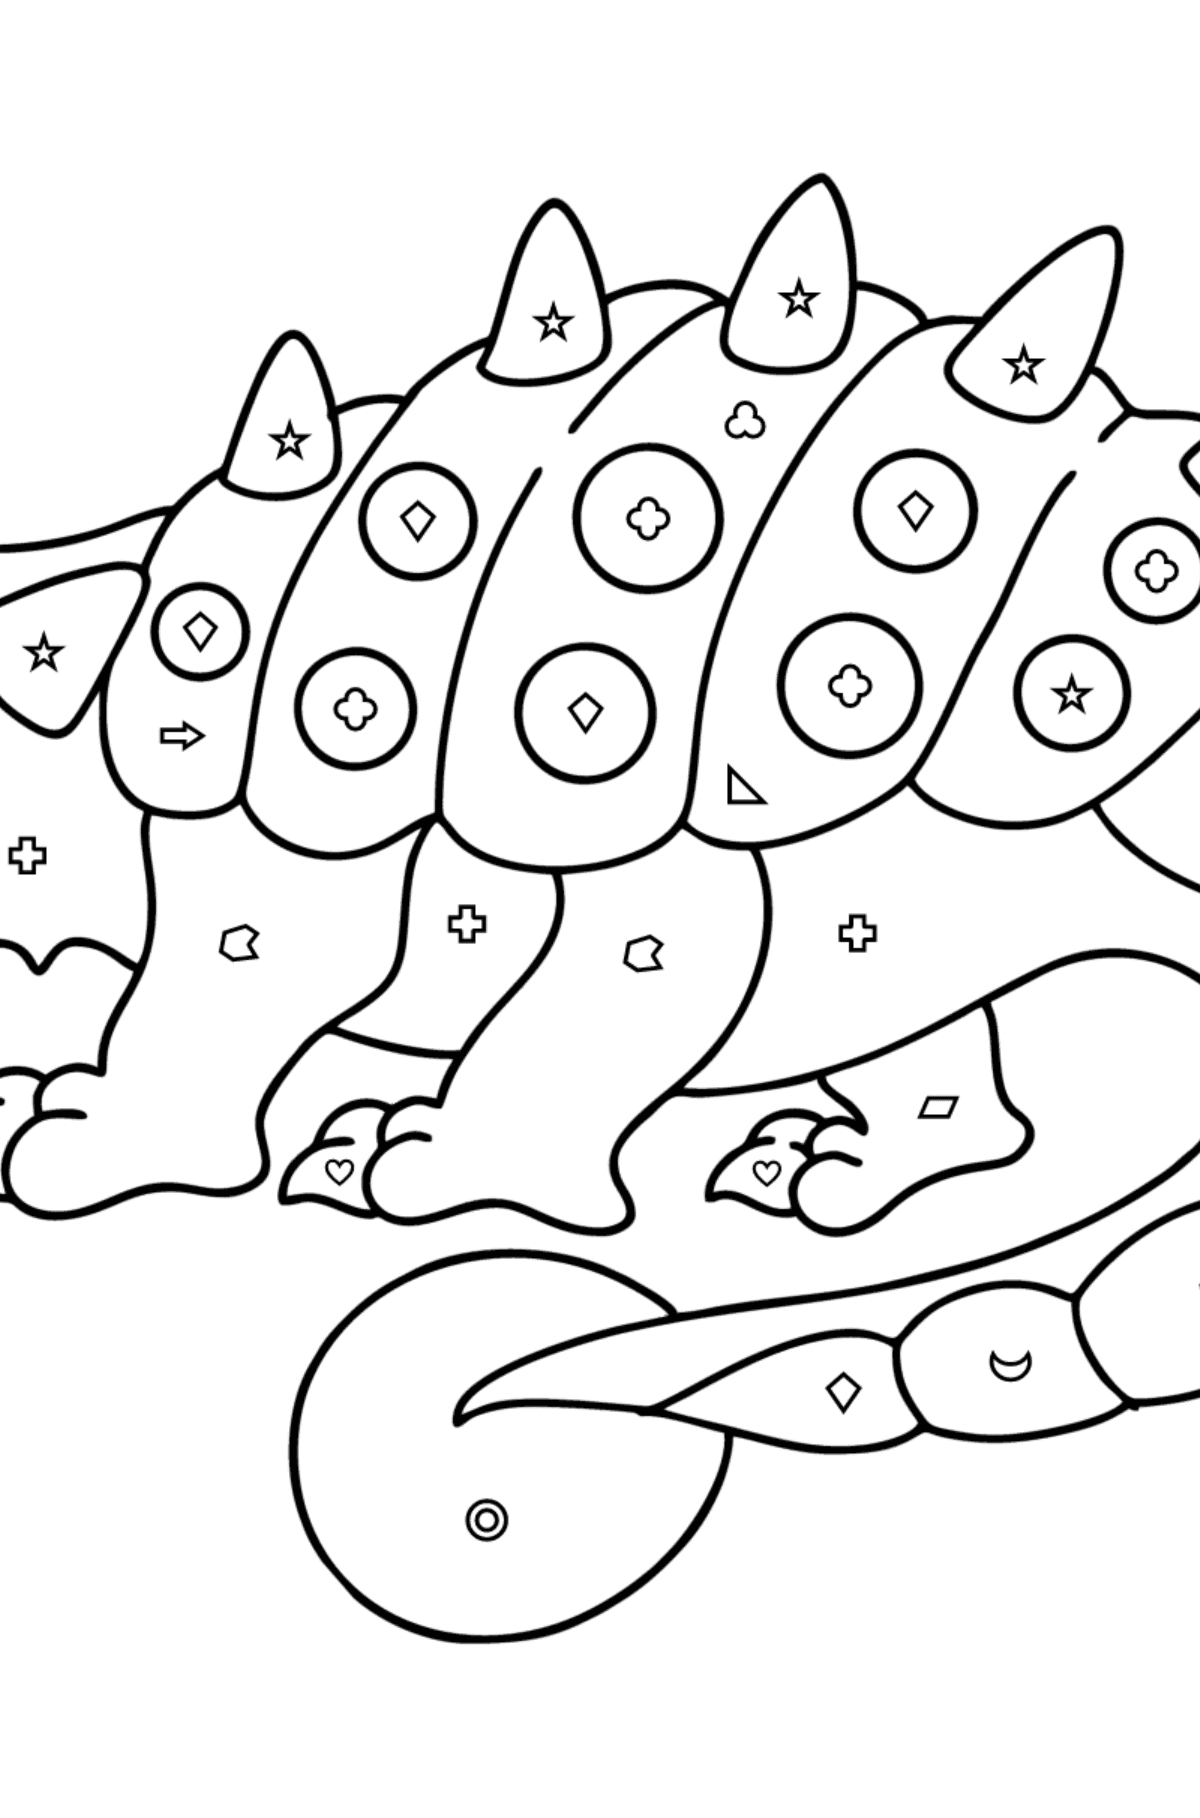 Dibujo de Anquilosaurio para colorear - Colorear por Formas Geométricas para Niños